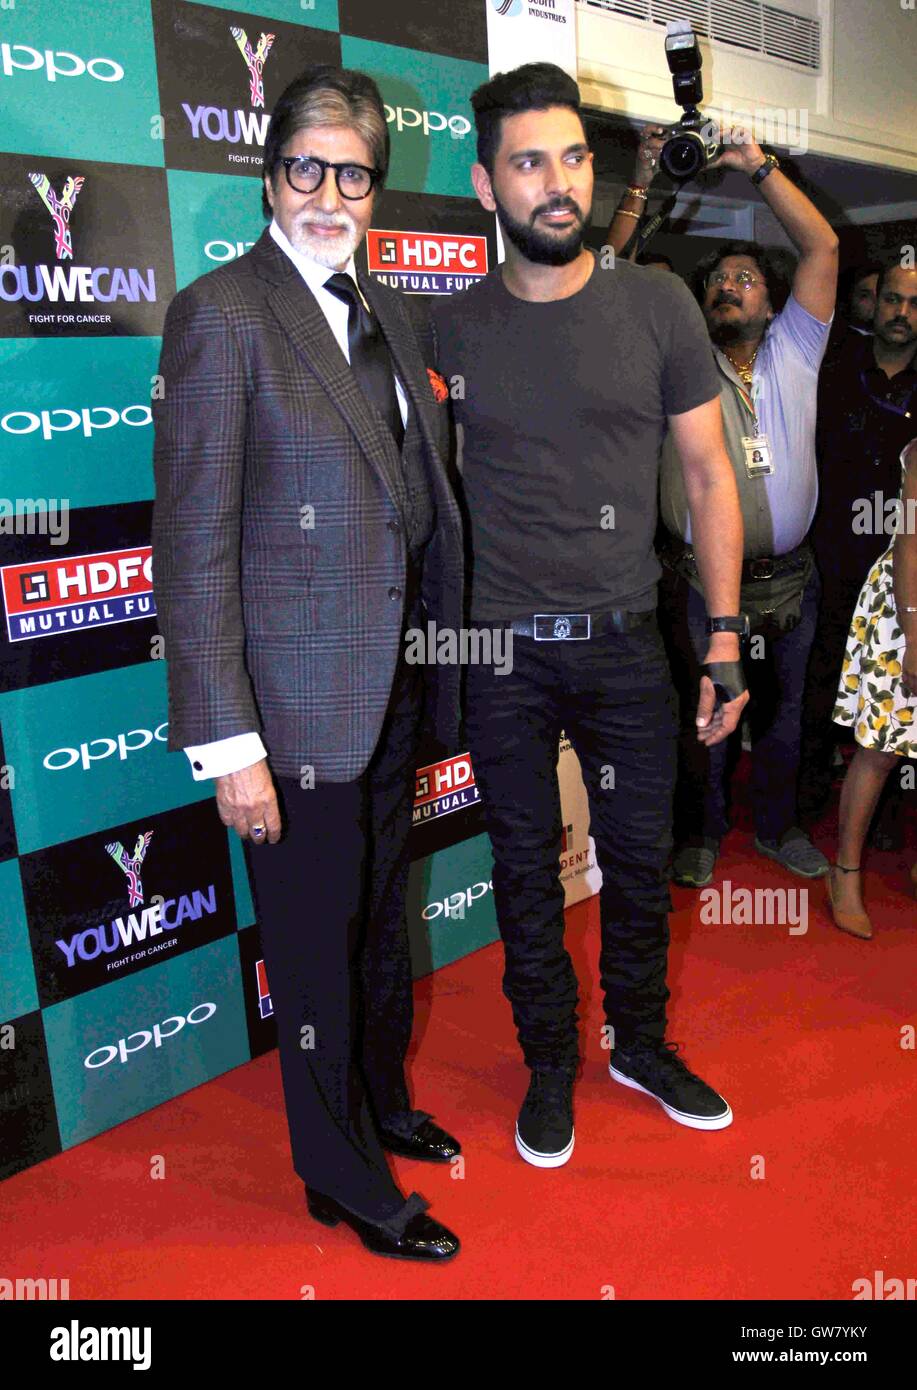 Indiano giocatore di cricket Yuvraj Singh attore di Bollywood Amitabh Bachchan lancio del marchio di abbigliamento YWC progettato Shantanu Nikhil Mumbai Foto Stock